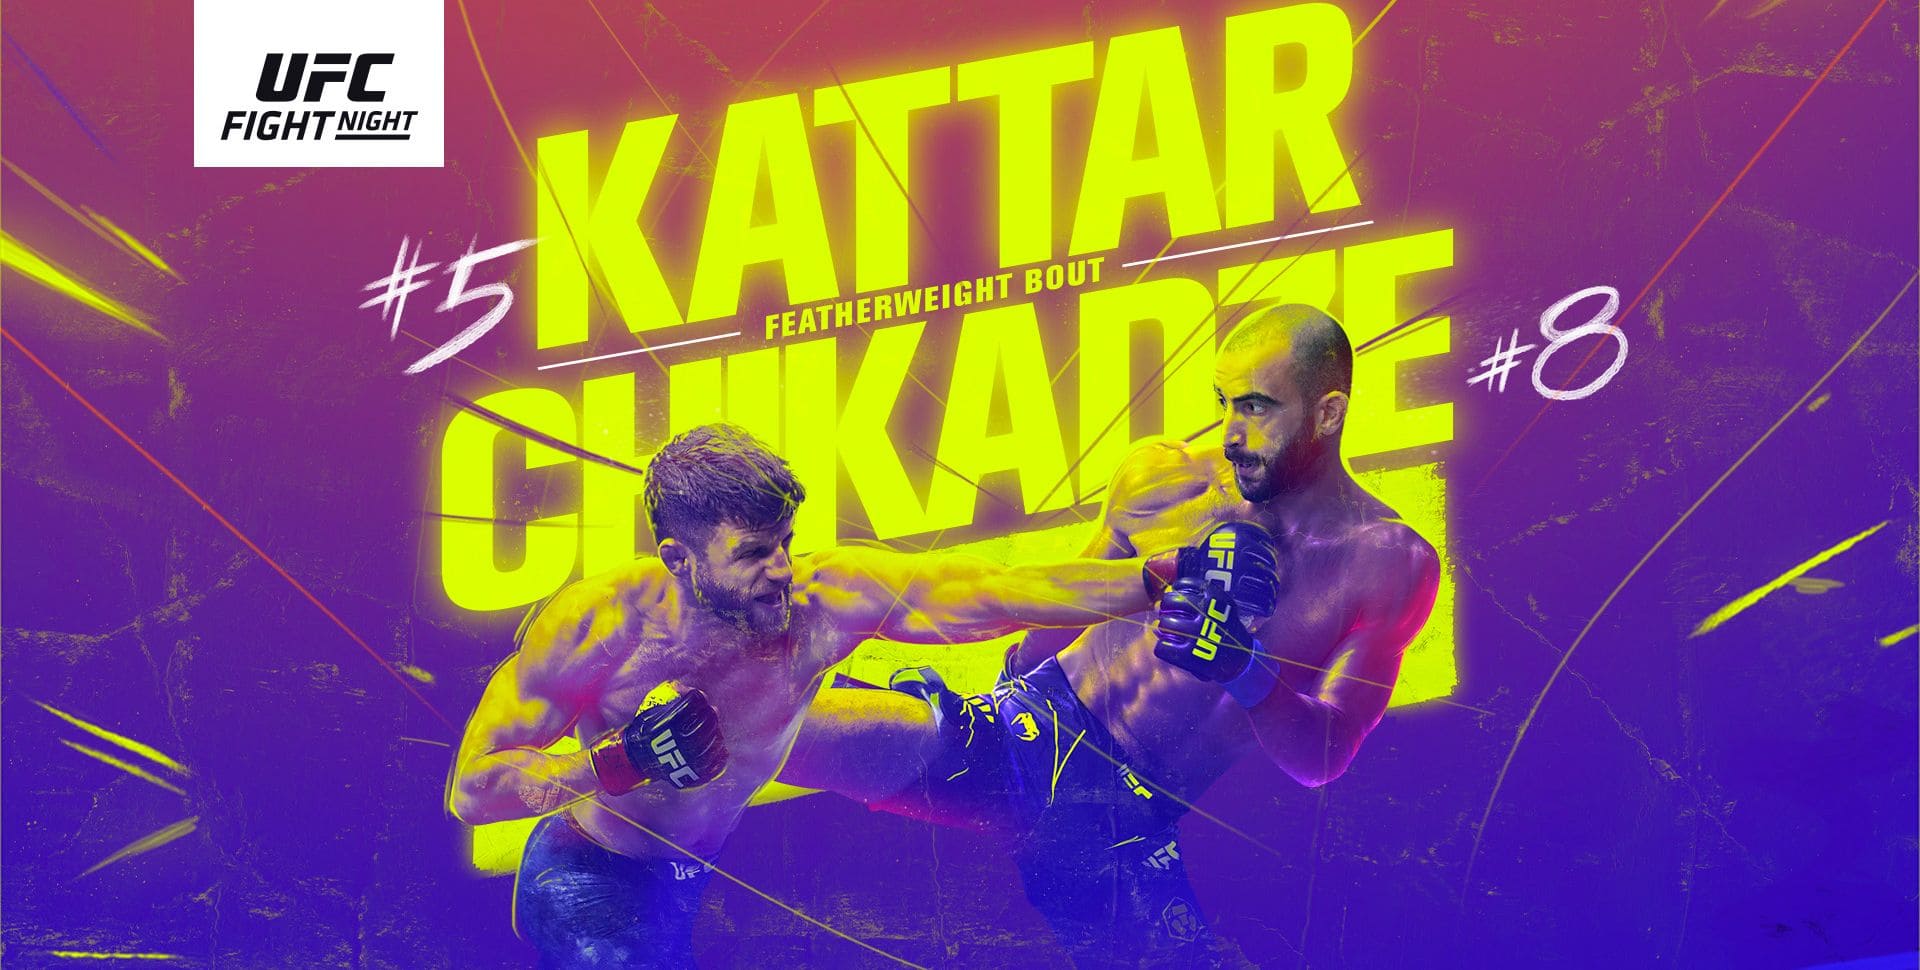 UFC on ESPN 32: Каттар - Чикадзе дата проведения, кард, участники и результаты